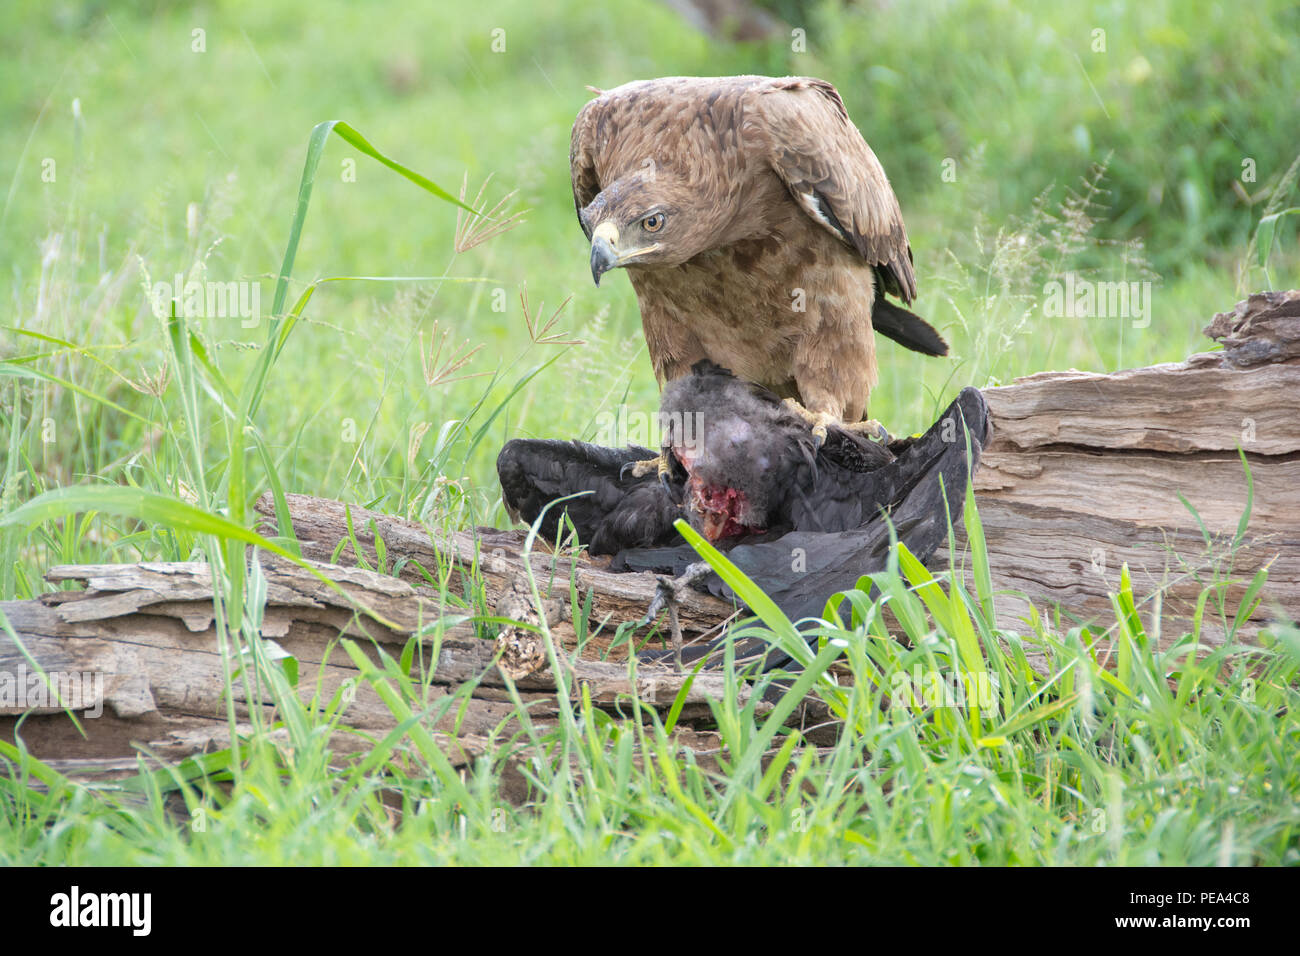 Un águila coronada africana alimentarse de otra especie de ave en el Parque nacional Serengeti, Tanzania. Foto de stock